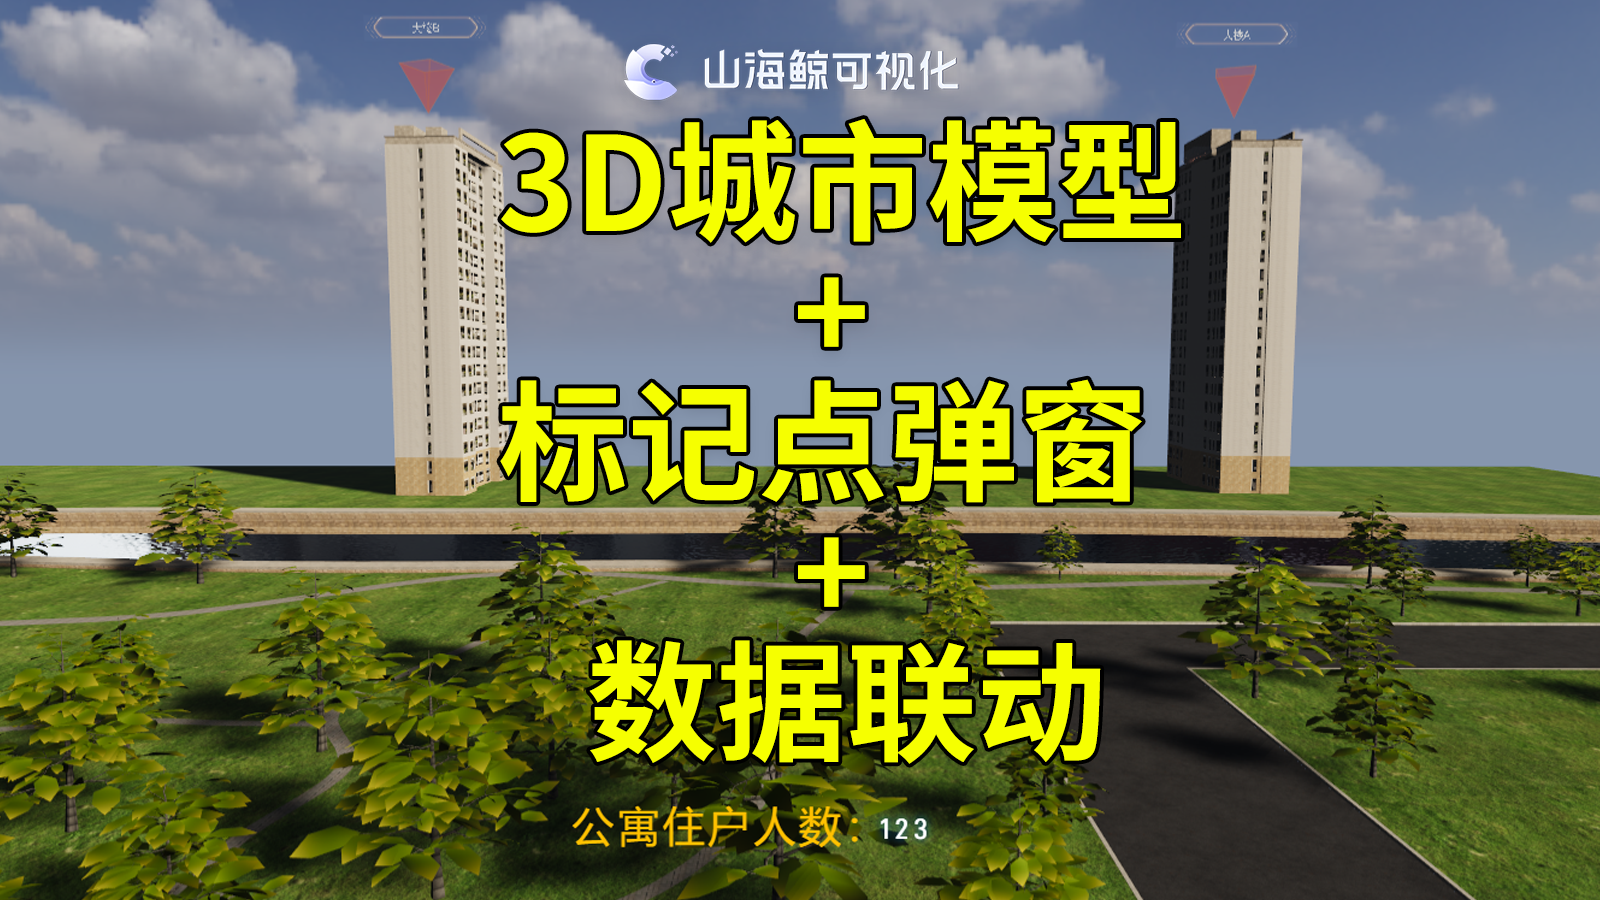 【功能演示】点击3D城市模型标记点弹窗进行数据联动